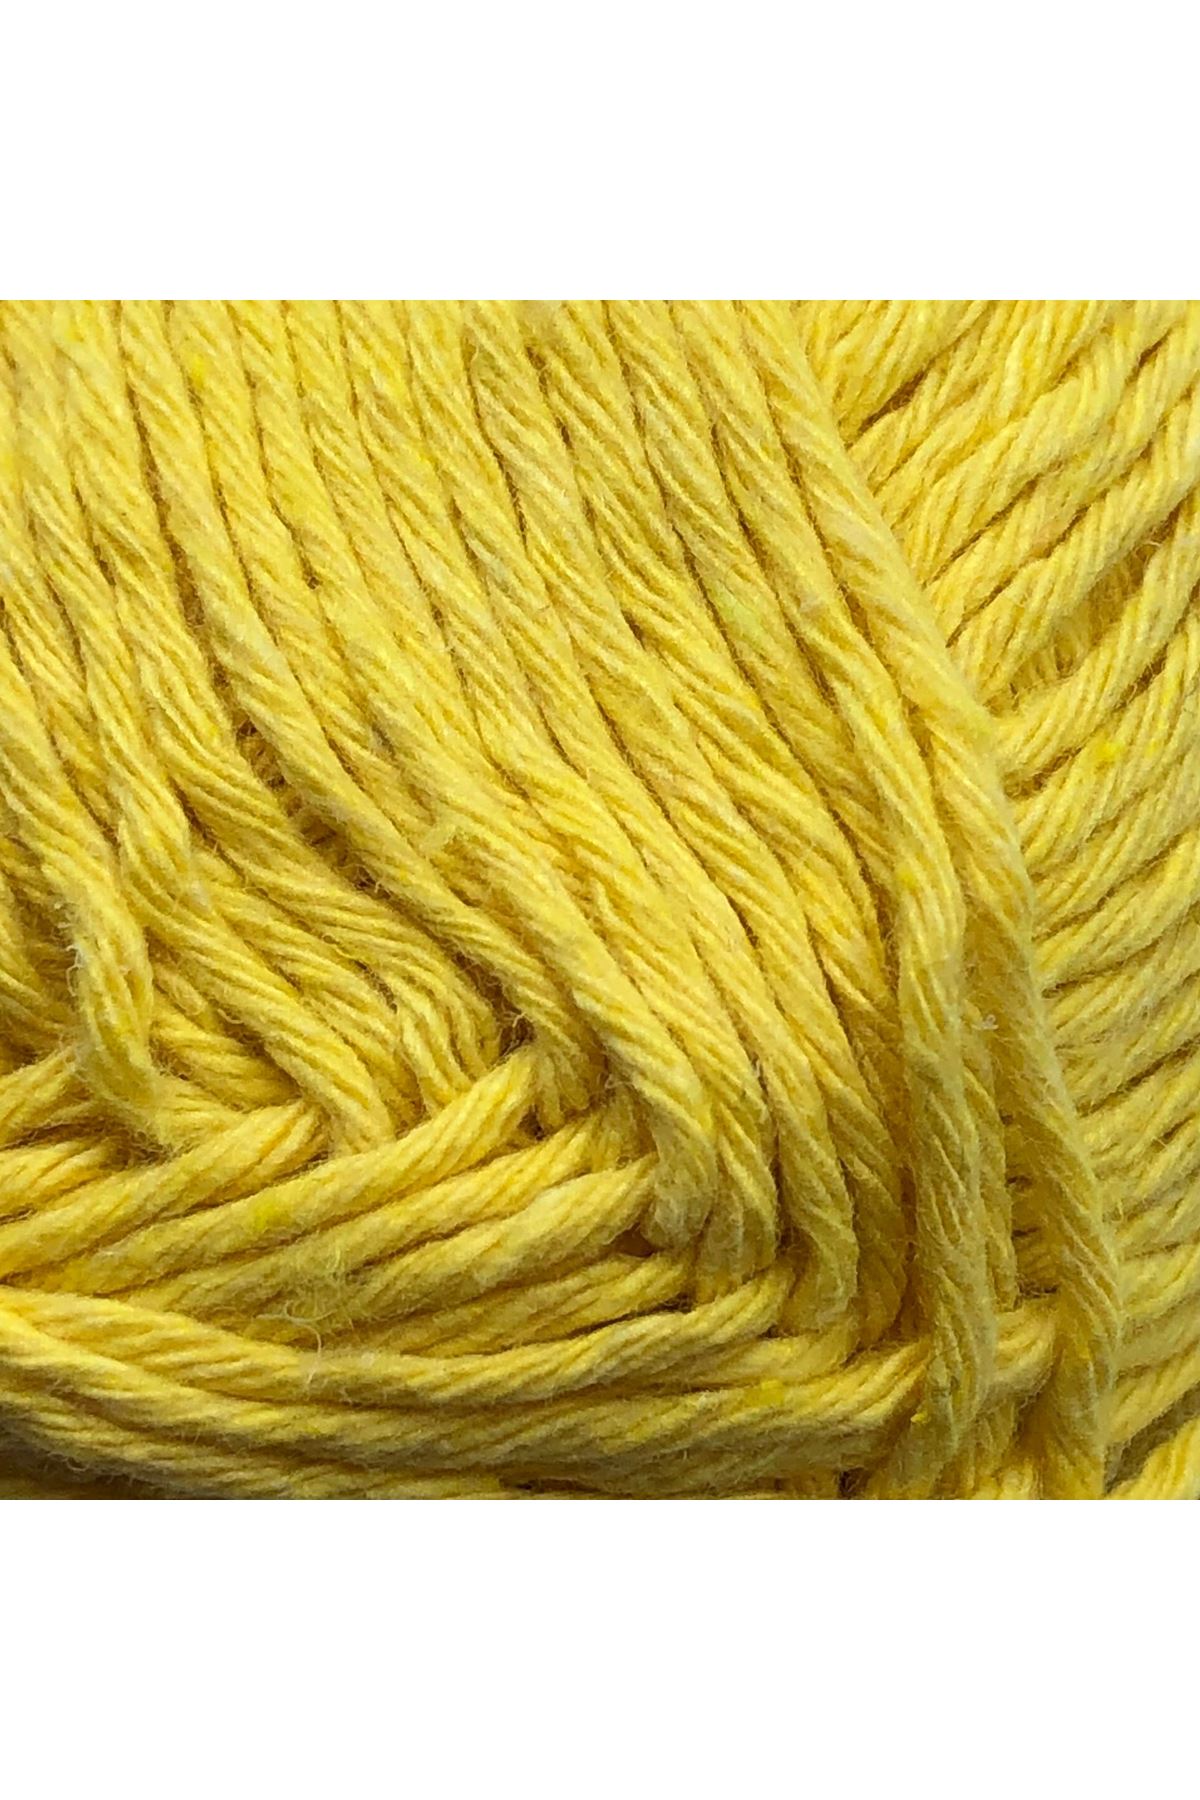 Eco Cotton 100 gram - 00124 - Sarı